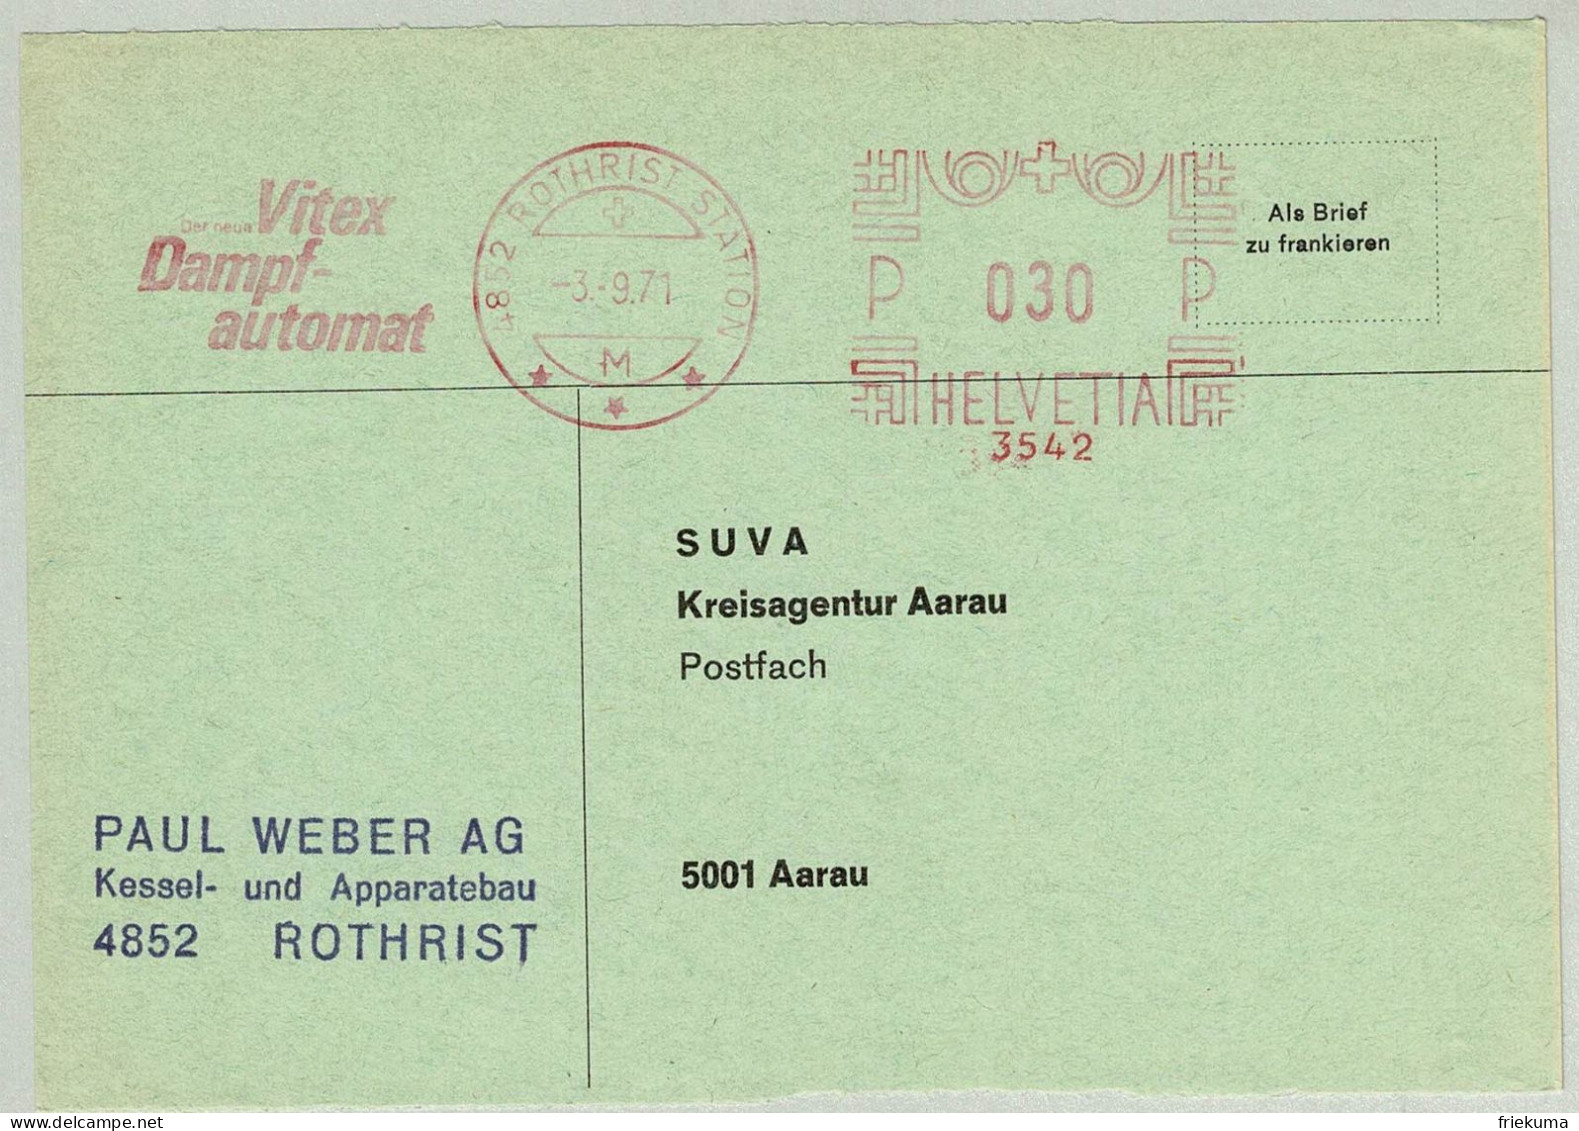 Schweiz / Helvetia 1971, Briefausschnitt Freistempel / EMA / Meterstamp Weber AG Rothrist - Aarau, Dampfautomat - Wasser